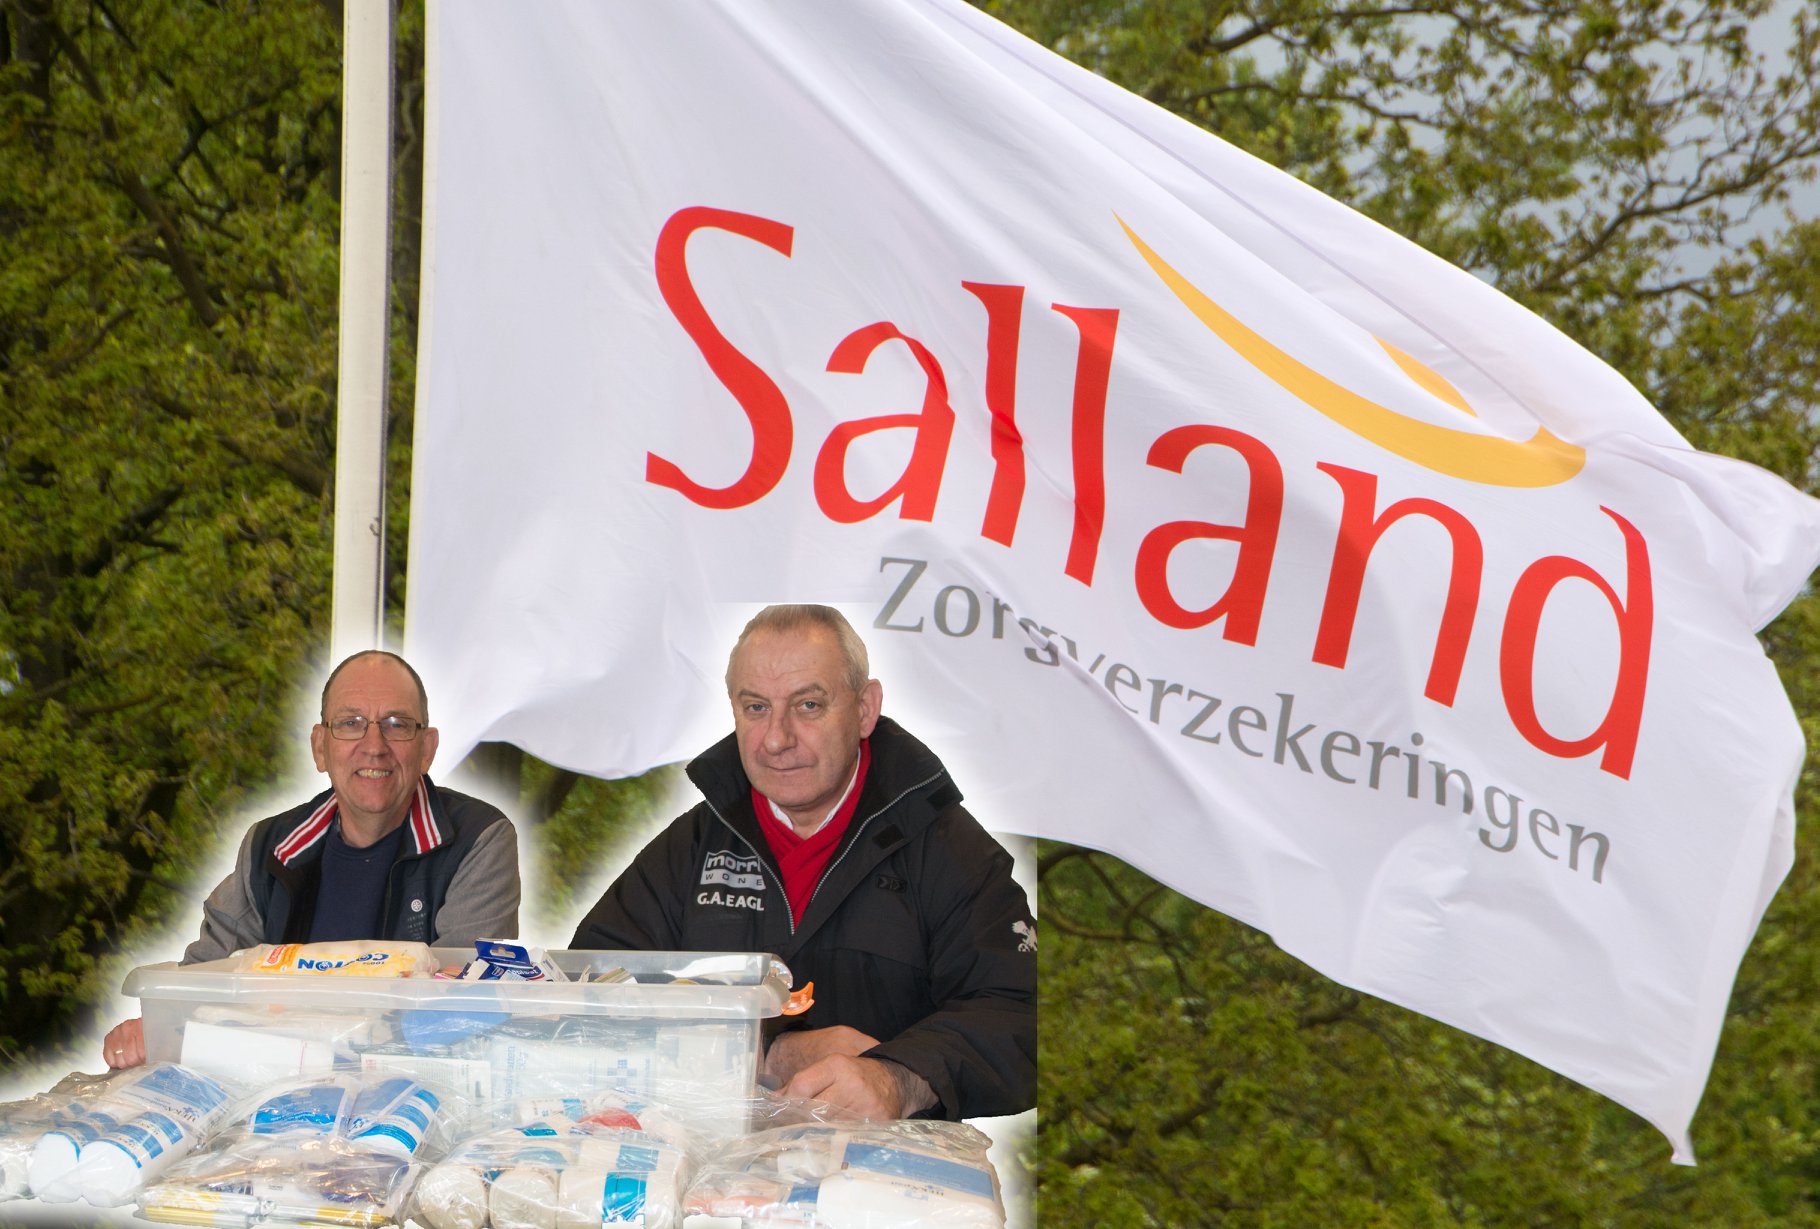 Salland zorgverzekeringen EHBO aanvulling met Sybald en Martin